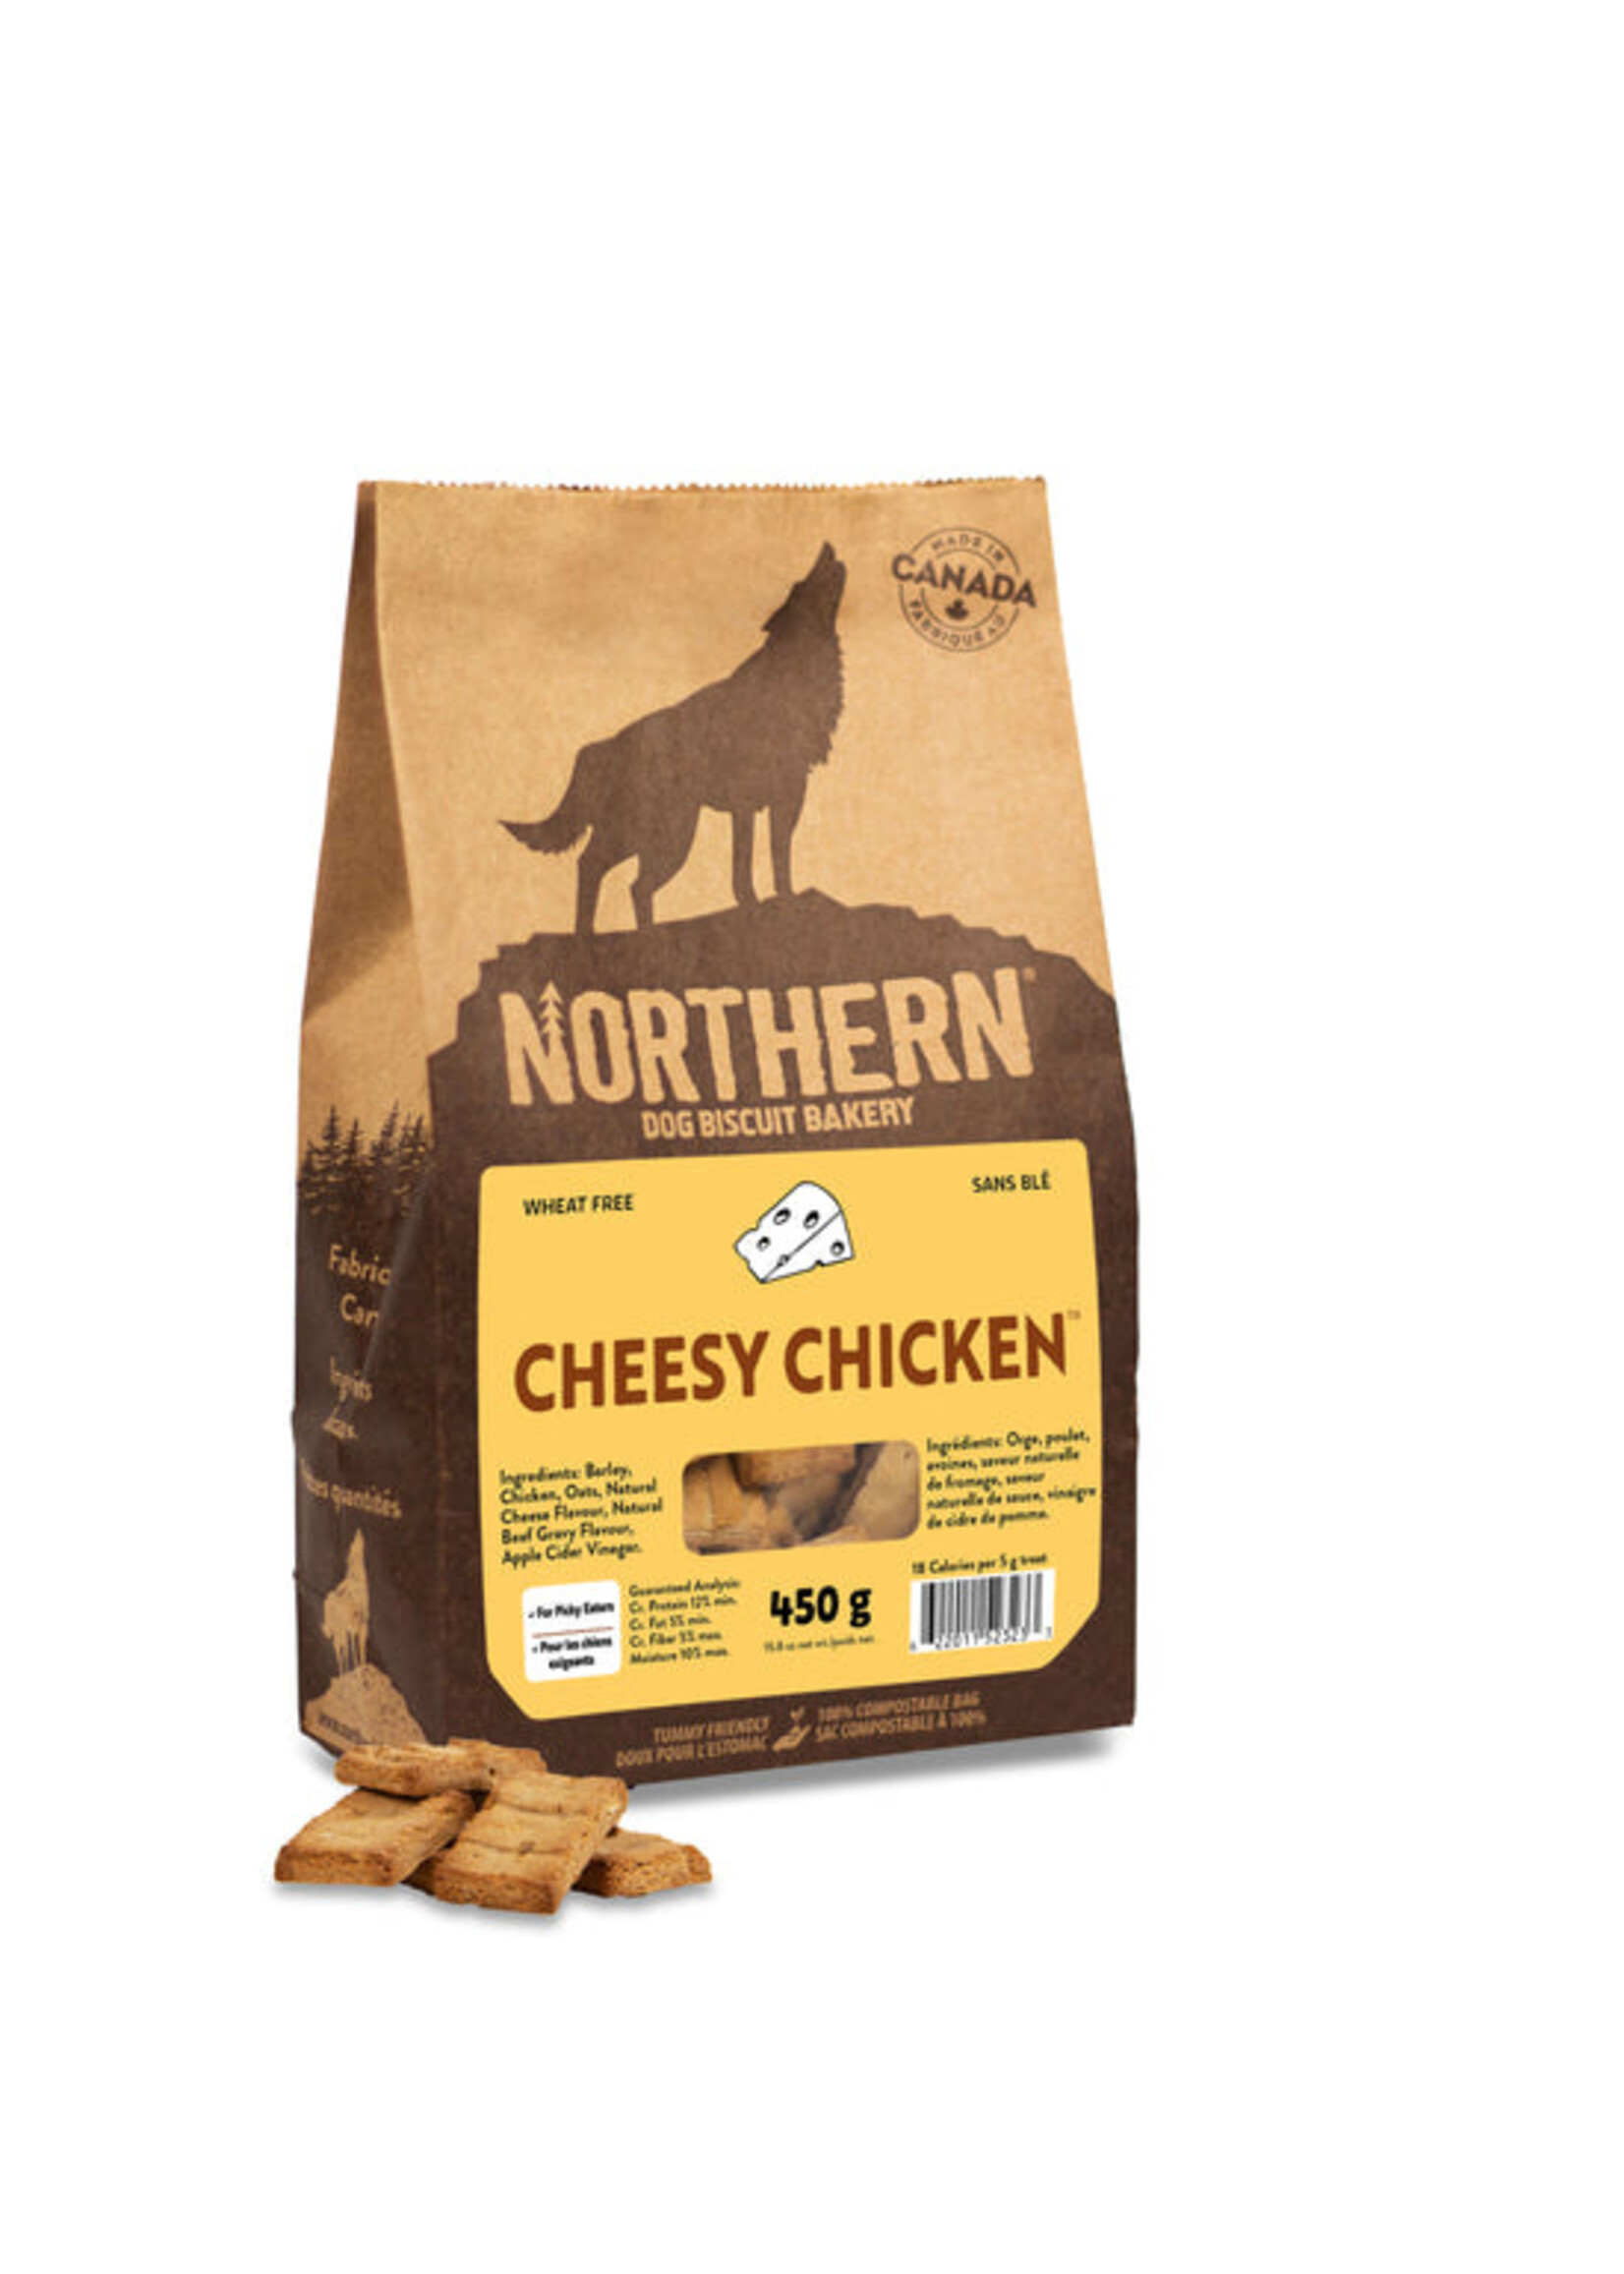 Northern Biscuit WF Cheesy Chicken 450 g / 15.9 oz